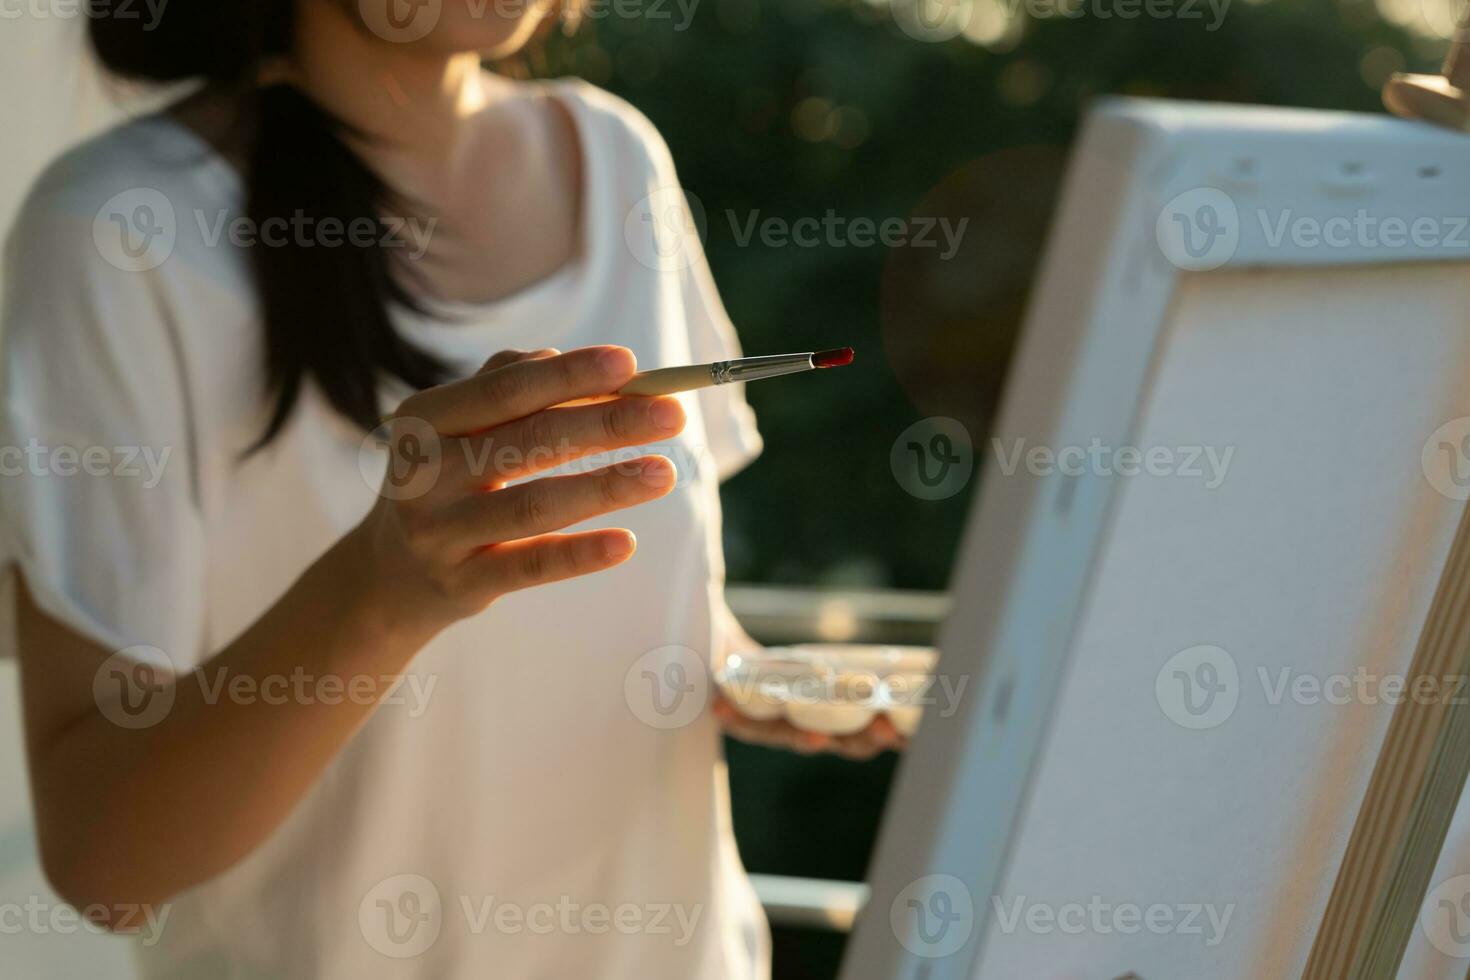 professionell kvinna konstnär flicka använda sig av paintbrush i abstrakt konst för skapa mästerverk. målare måla med akvareller eller olja i studio hus. skön kvinna njut av målning som hobby. arbete rekreation foto